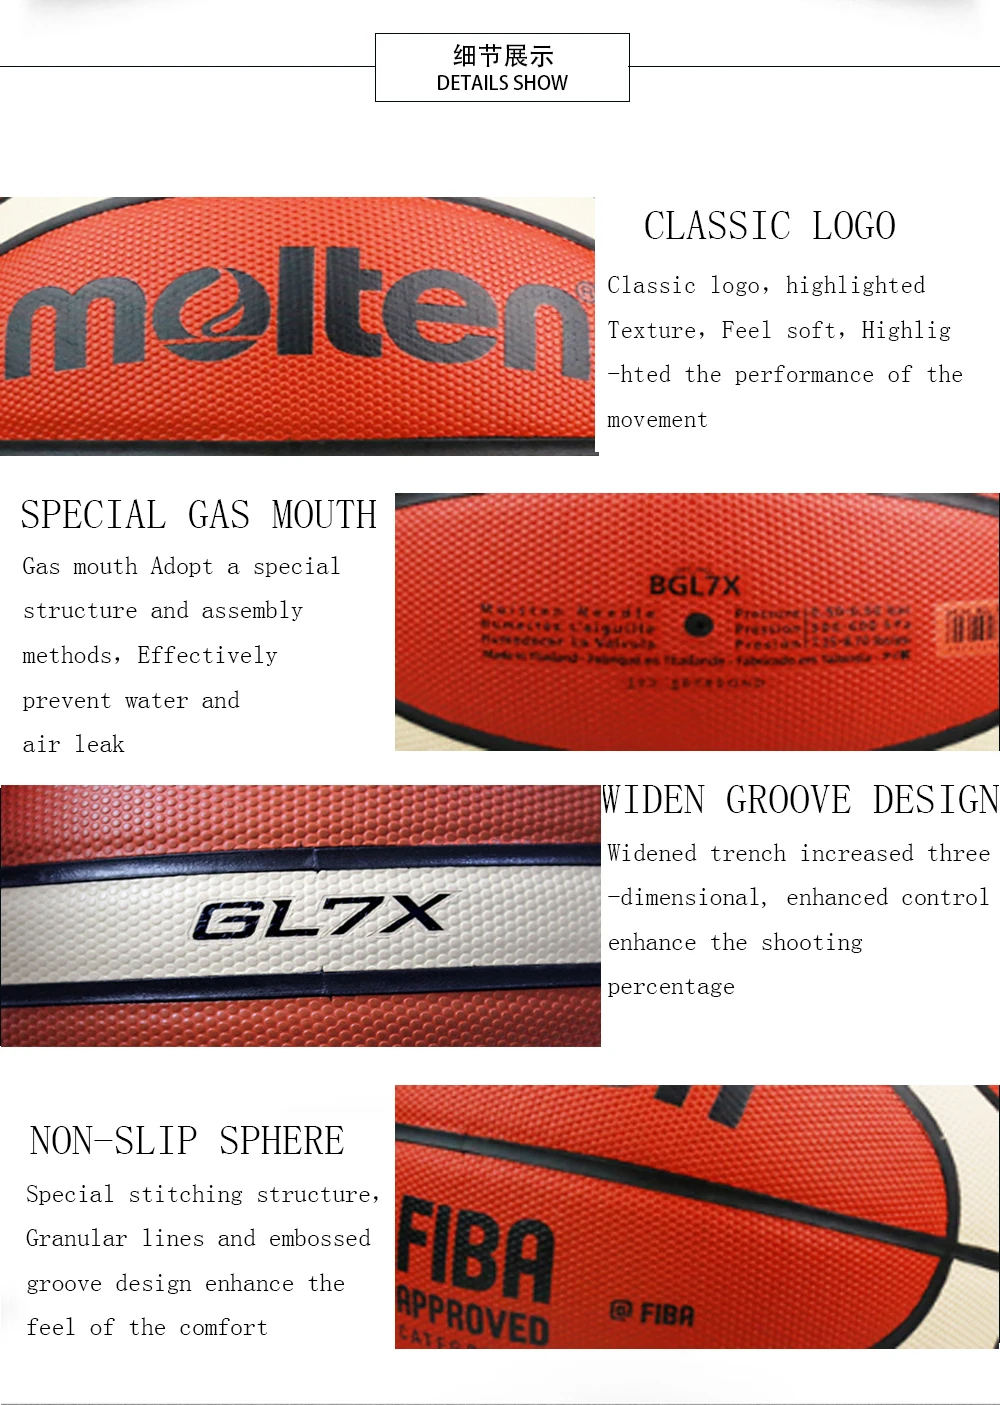 Баскетбольный мяч GL7 GL7X, бренд, высокое качество, натуральная расплавленная кожа, Официальный баскетбольный мяч, Размер 7